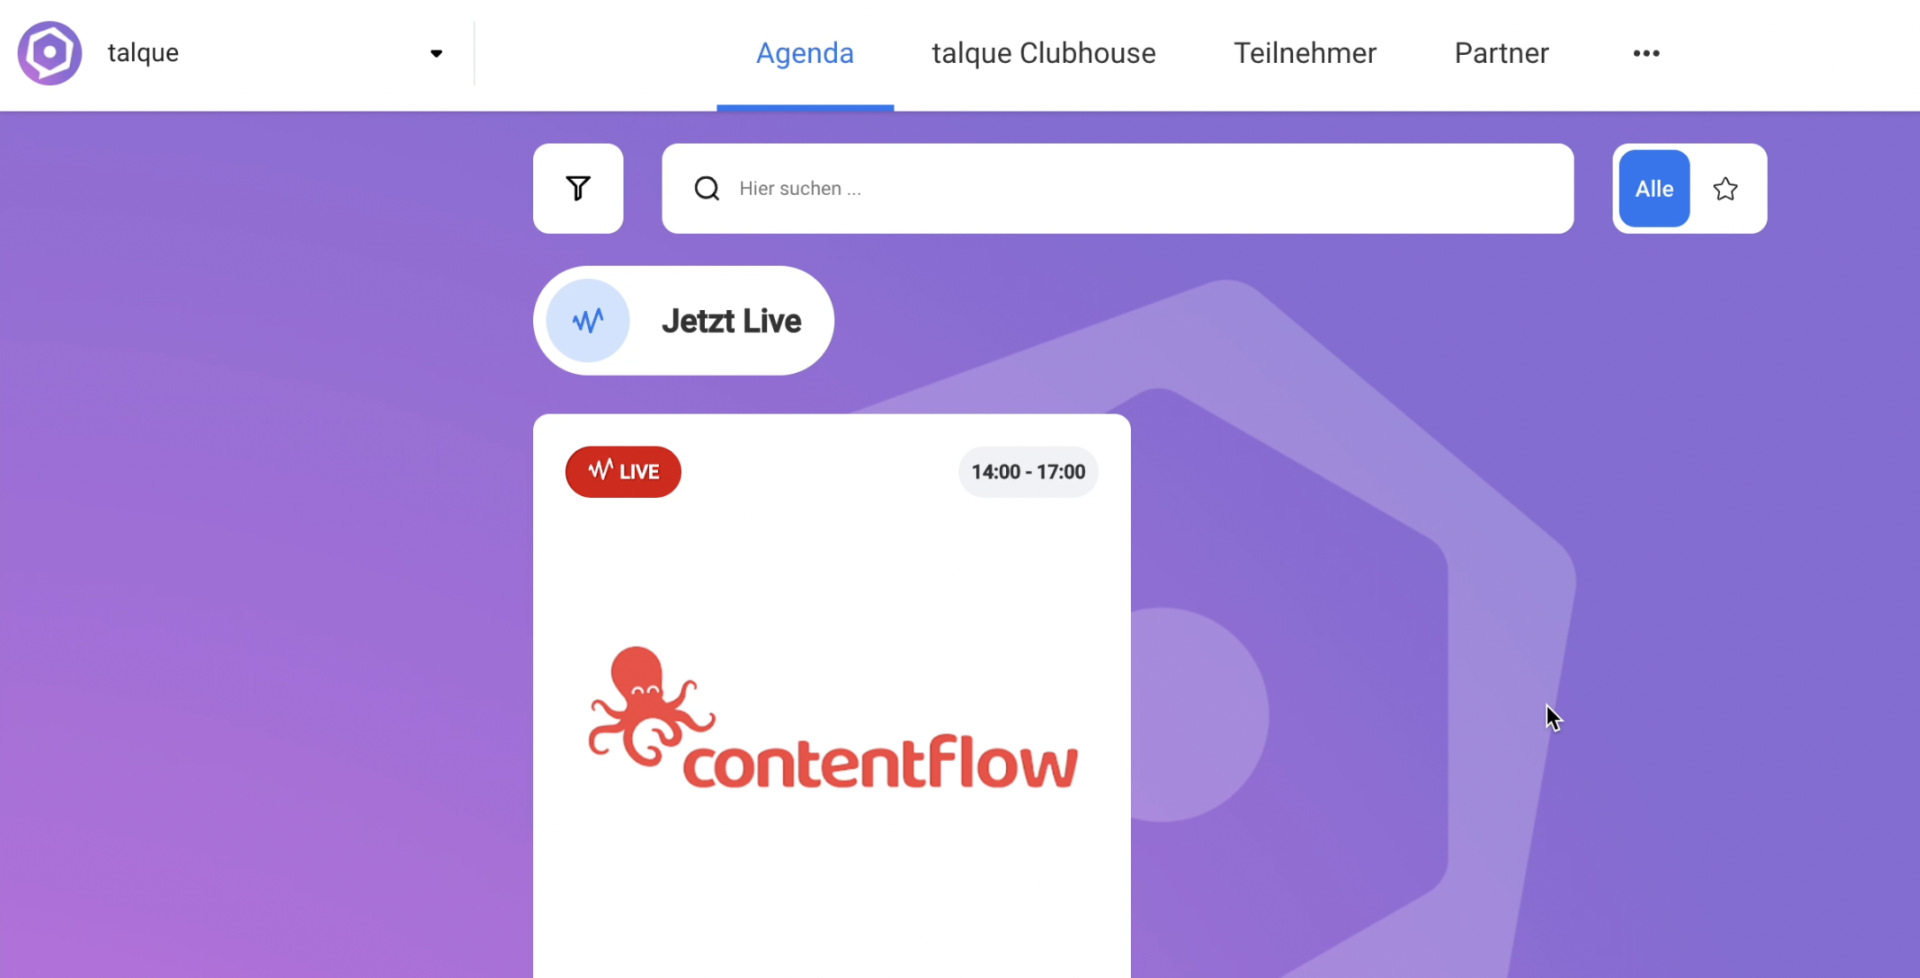 So bindest Du einen Contentflow Livestream bei Talque ein